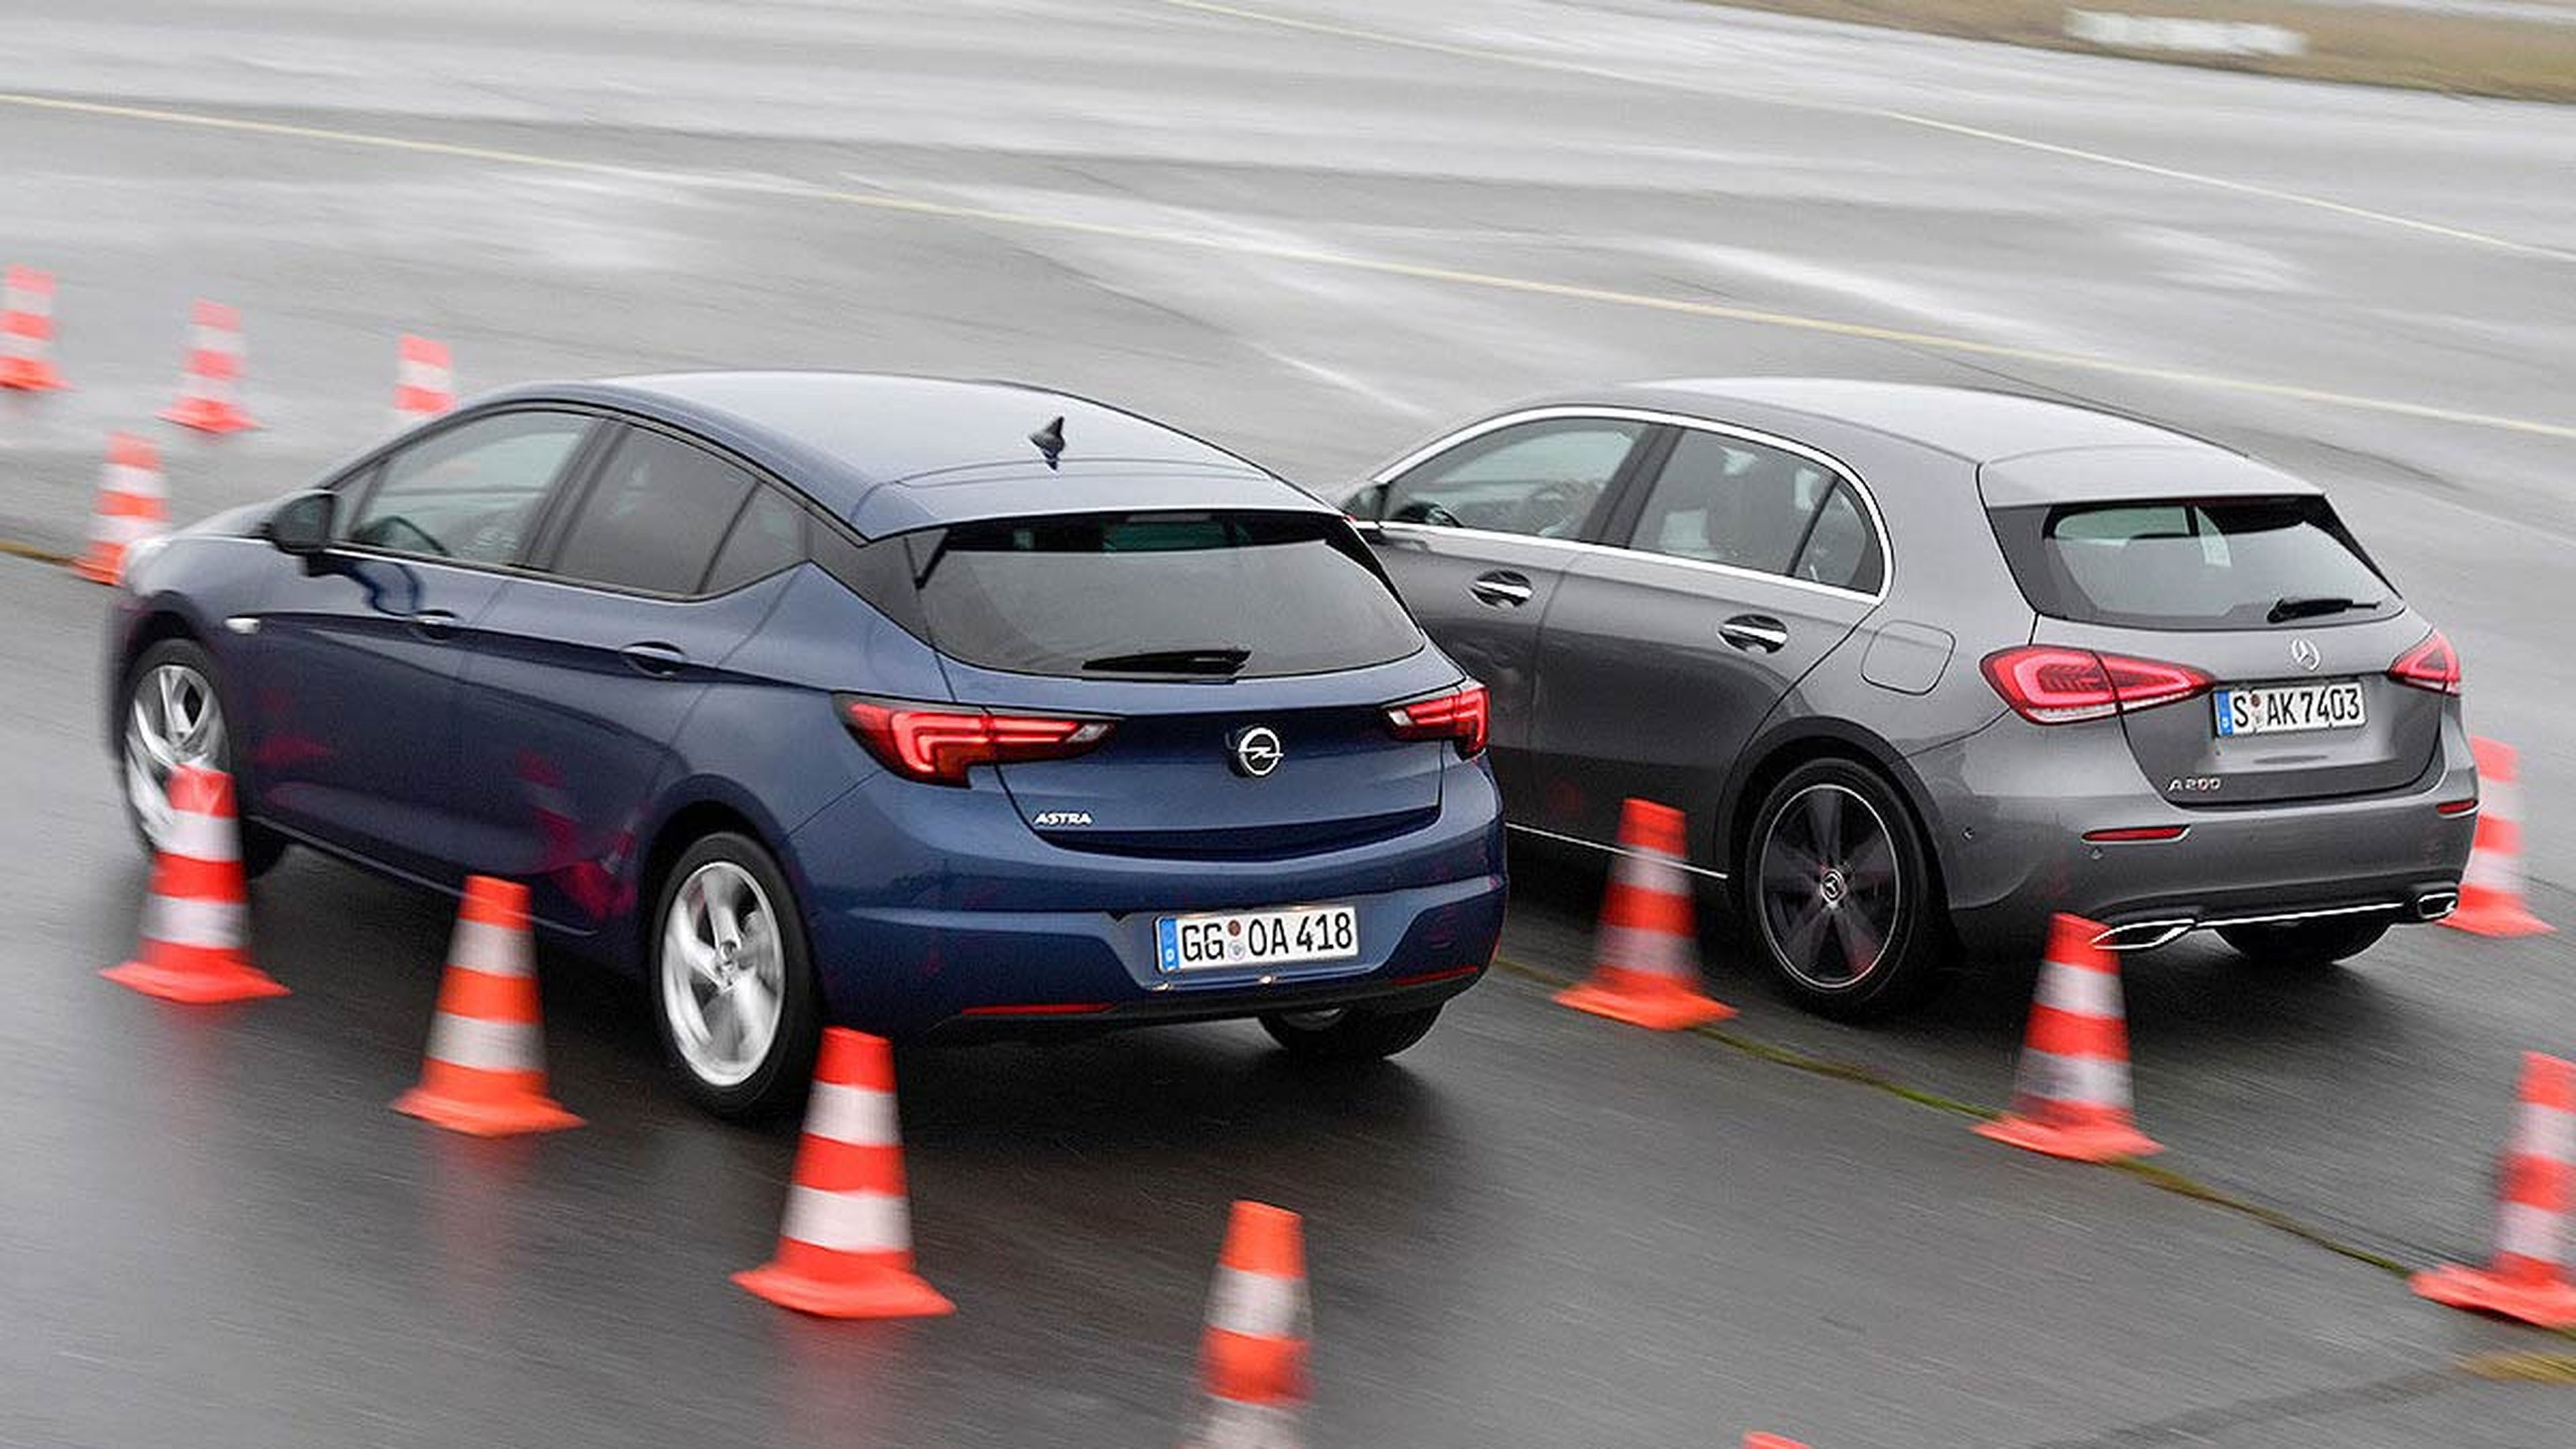 El Opel mantiene muy bien el tipo frente a su rival premium